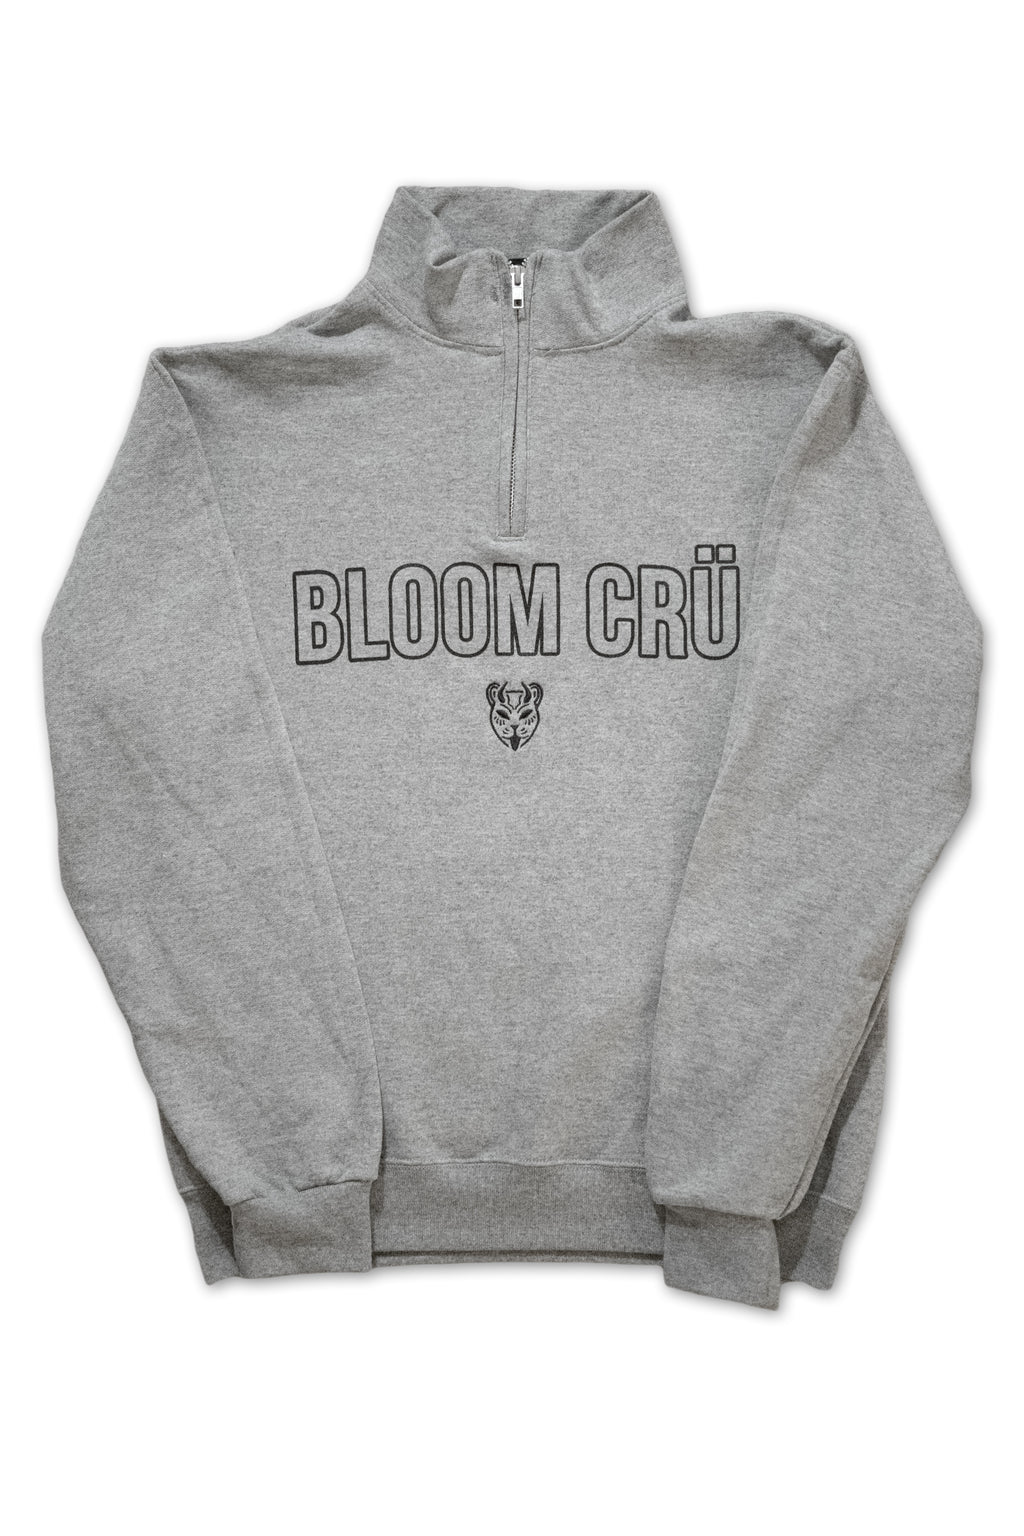 Bloom Cru 1/4 Zip